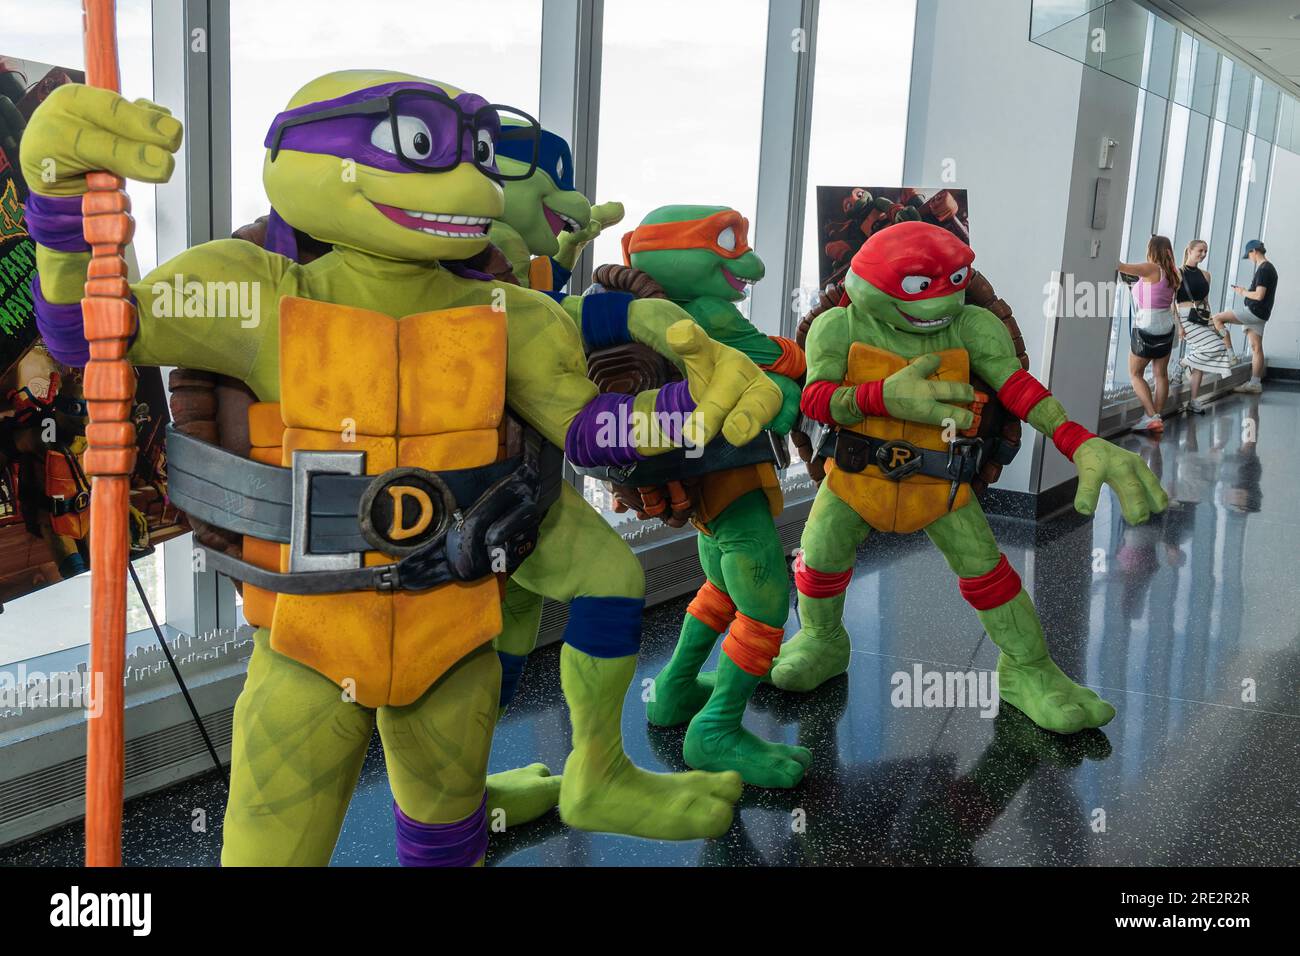 https://c8.alamy.com/compes/2re2r2r/los-personajes-de-las-tortugas-ninja-adolescentes-mutantes-visitan-el-one-world-observatory-en-nueva-york-el-24-de-julio-de-2023-y-posan-con-los-visitantes-en-anticipacion-al-lanzamiento-de-teenage-mutant-ninja-turtles-mutant-mayhem-2re2r2r.jpg